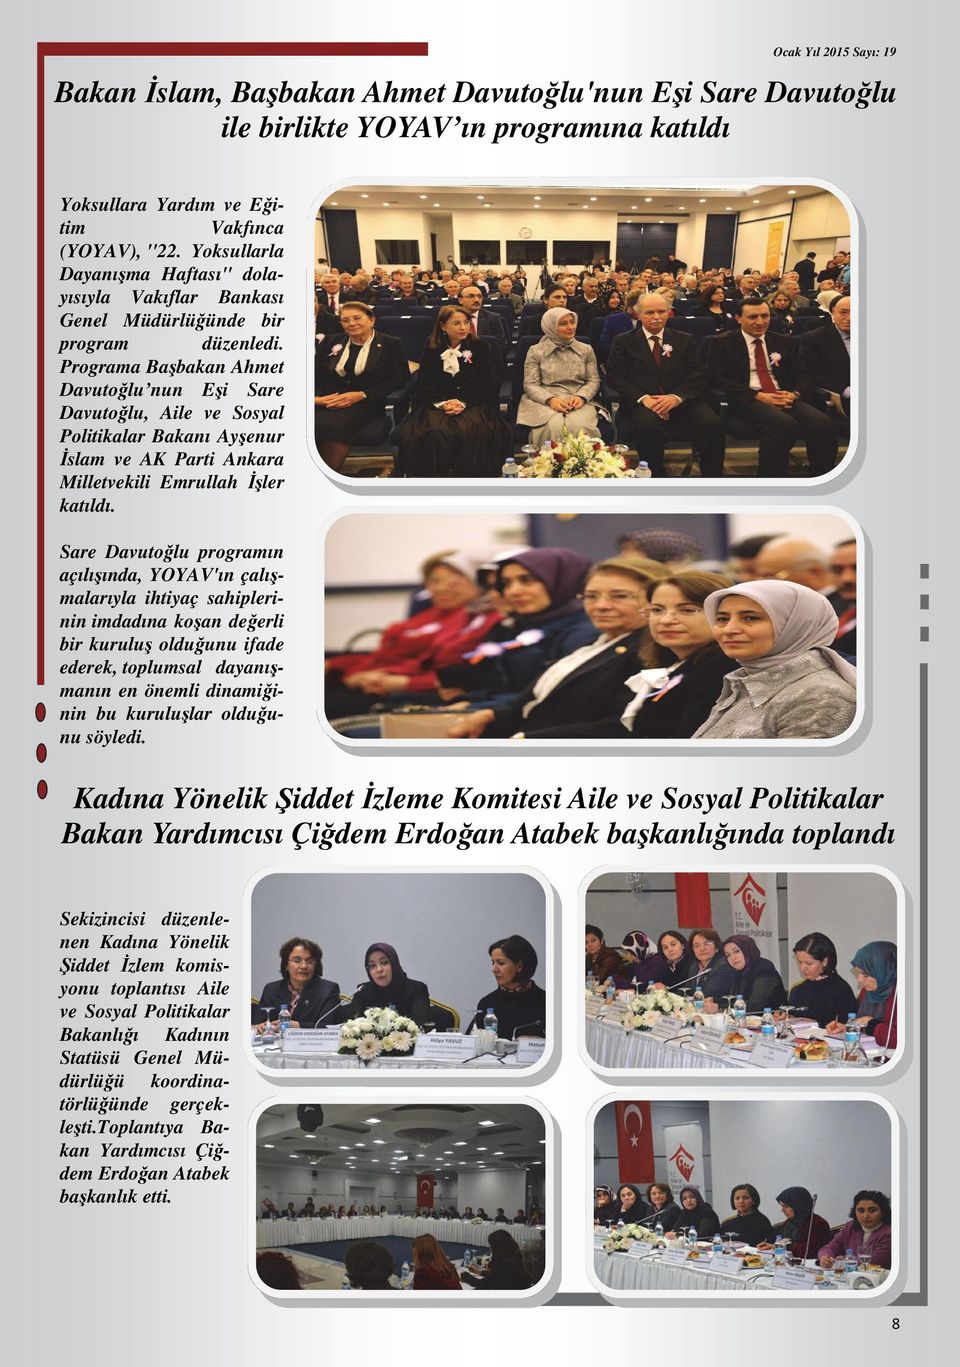 Programa Başbakan Ahmet Davutoğlu nun Eşi Sare Davutoğlu, Aile ve Sosyal Politikalar Bakanı Ayşenur İslam ve AK Parti Ankara Milletvekili Emrullah İşler katıldı.